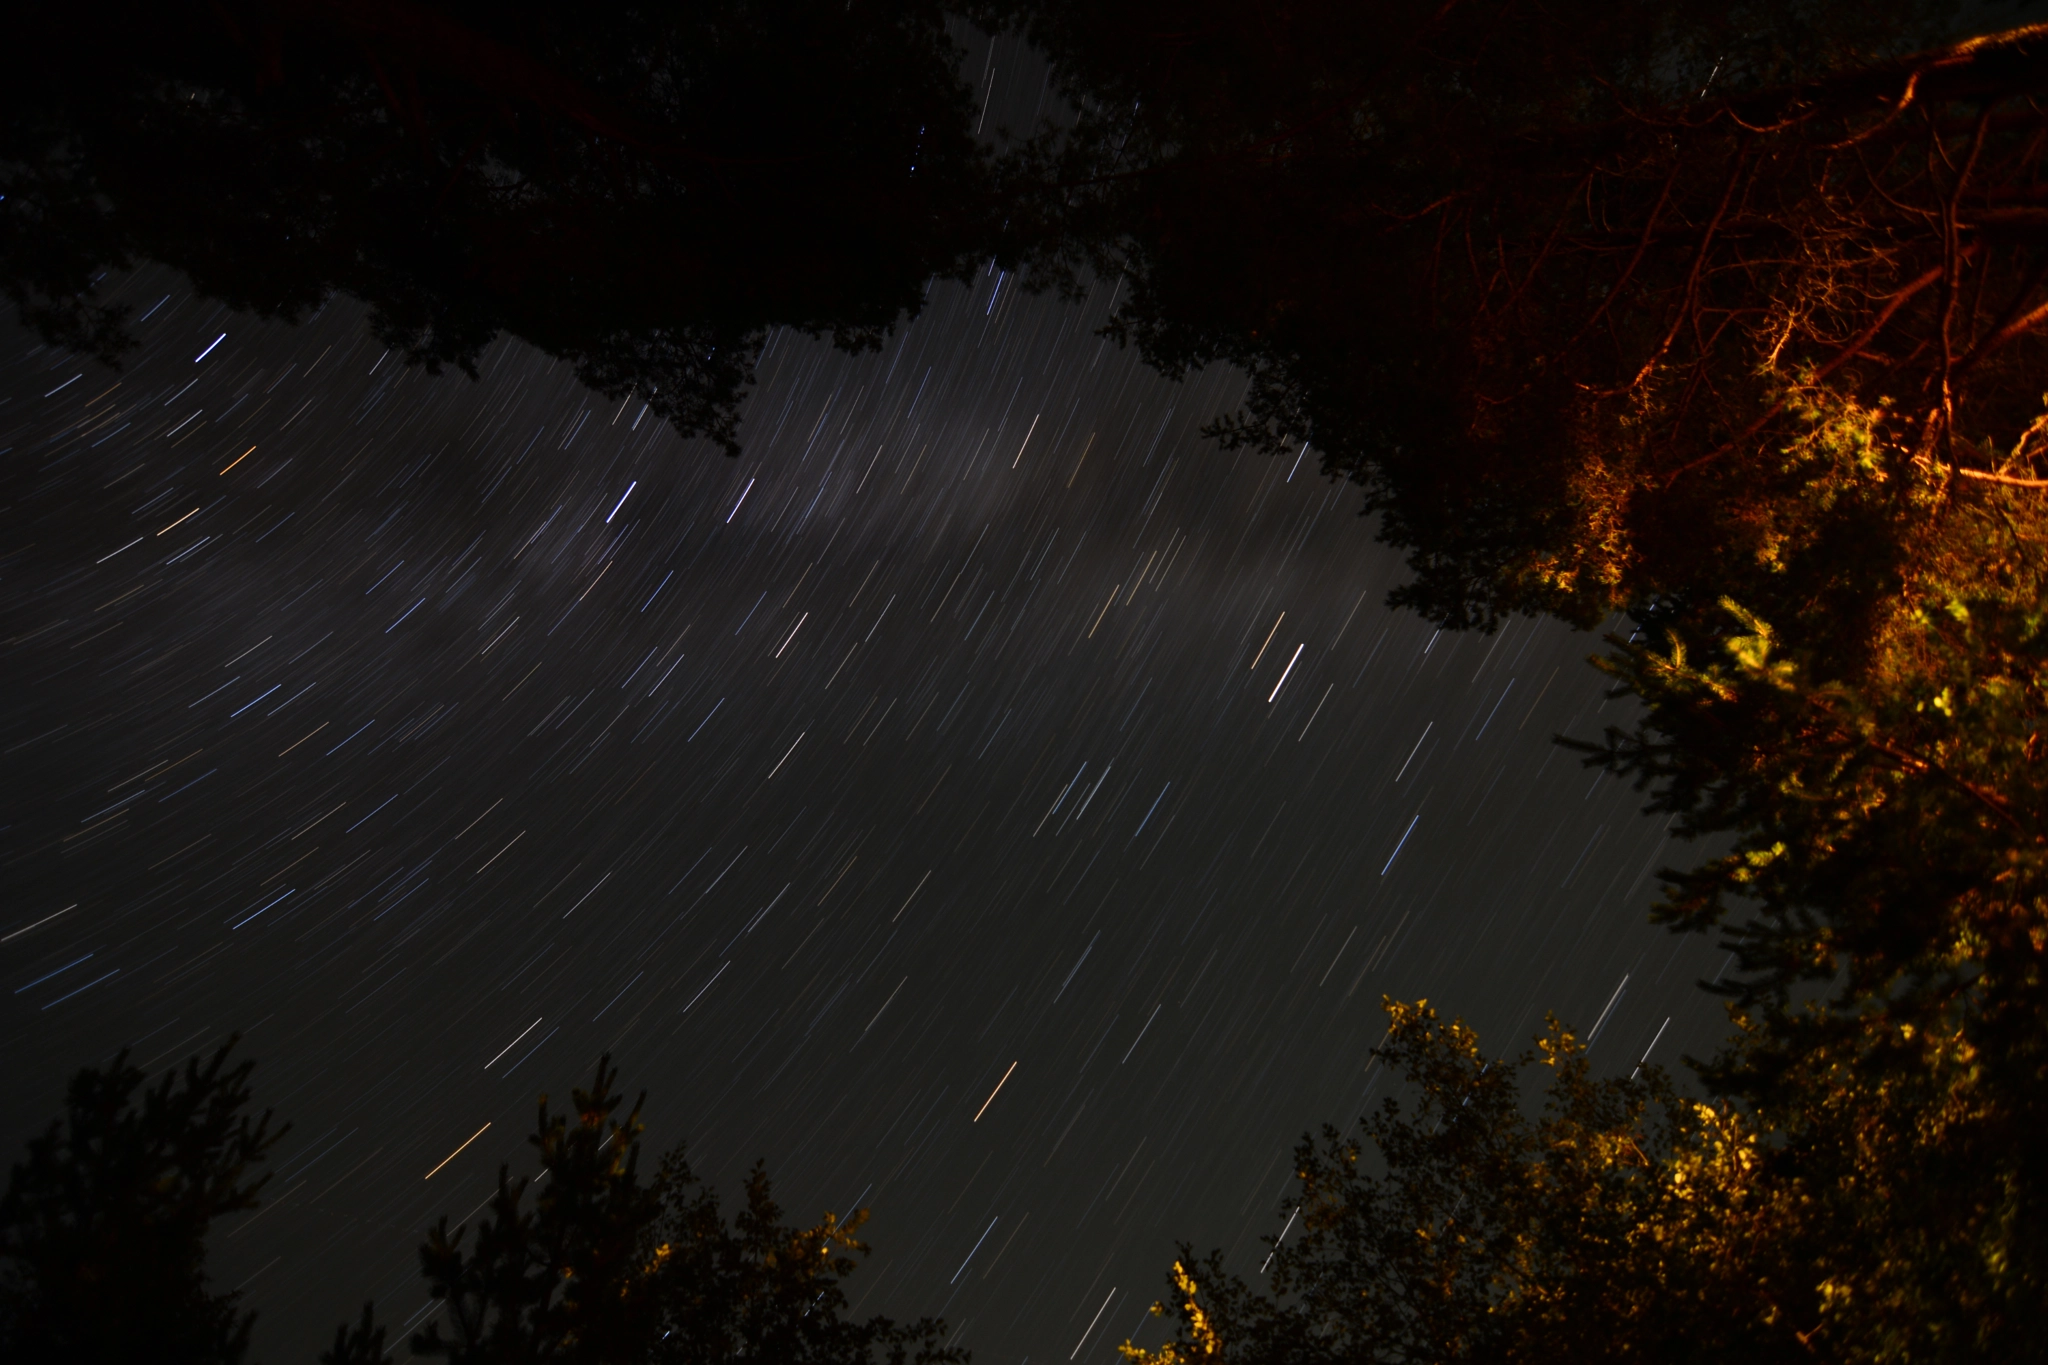 Nikon D5200 + Tokina AT-X Pro 11-16mm F2.8 DX II sample photo. Night sky photography